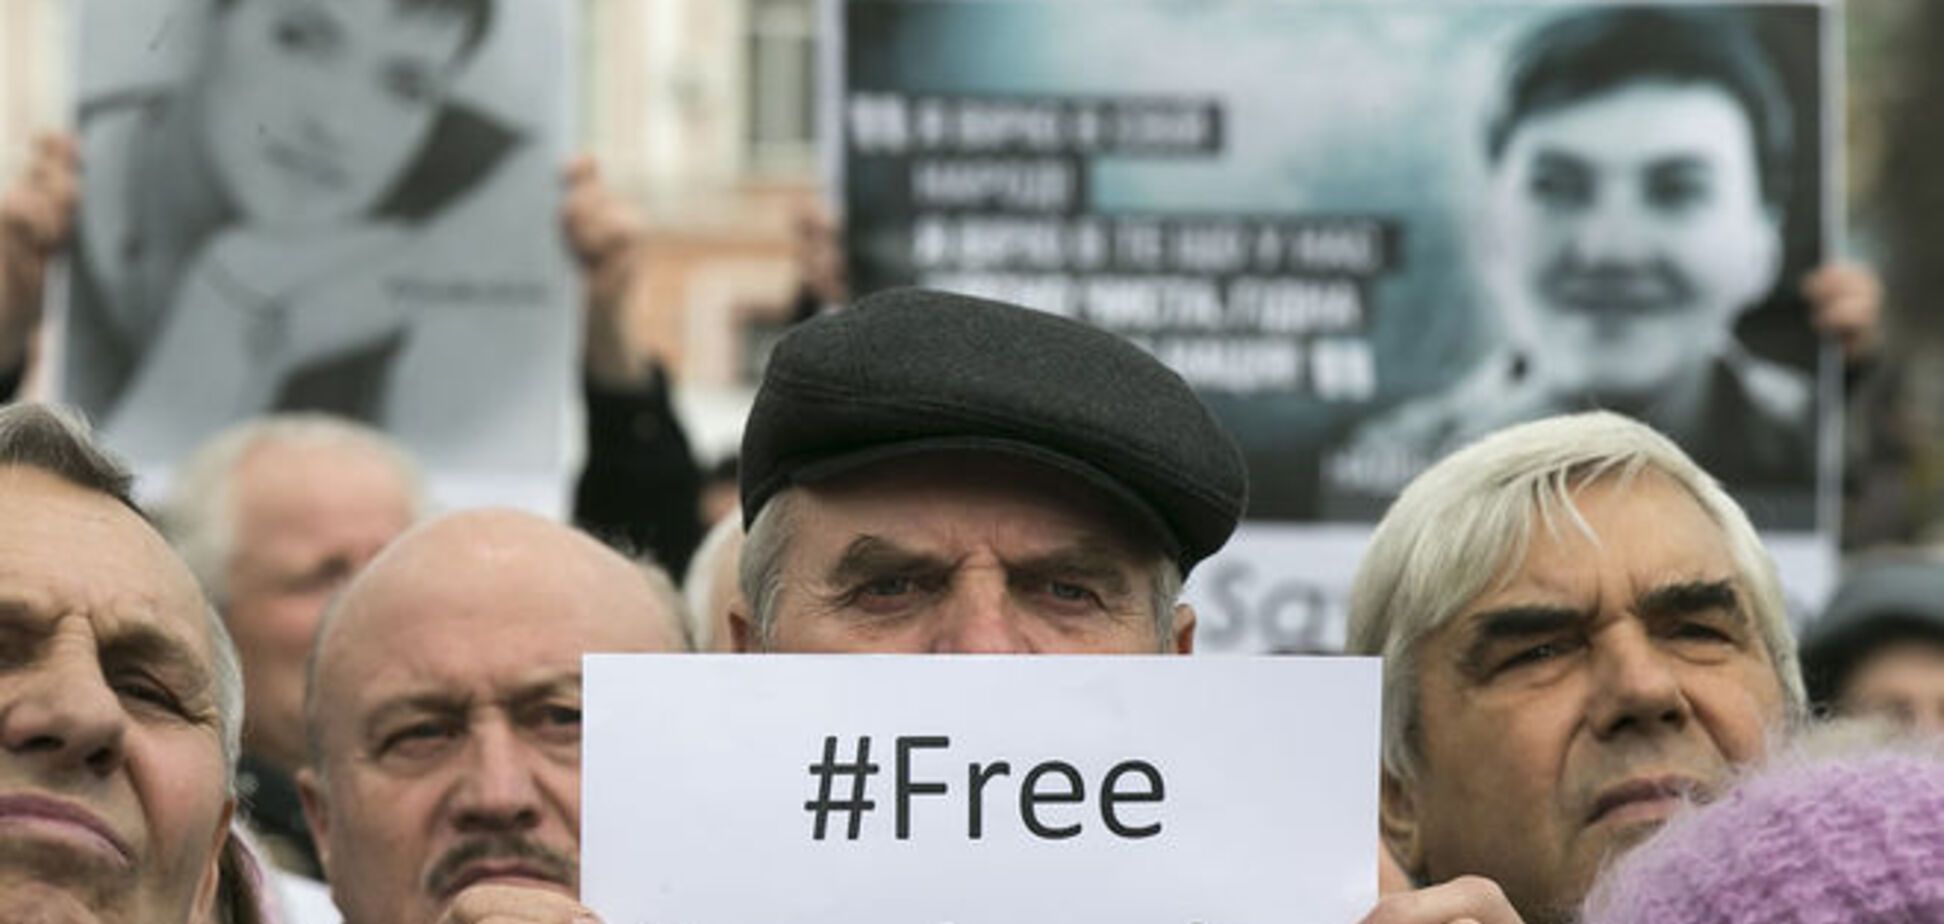 Адвокат объявил всемирную акцию в поддержку Савченко на 11 мая